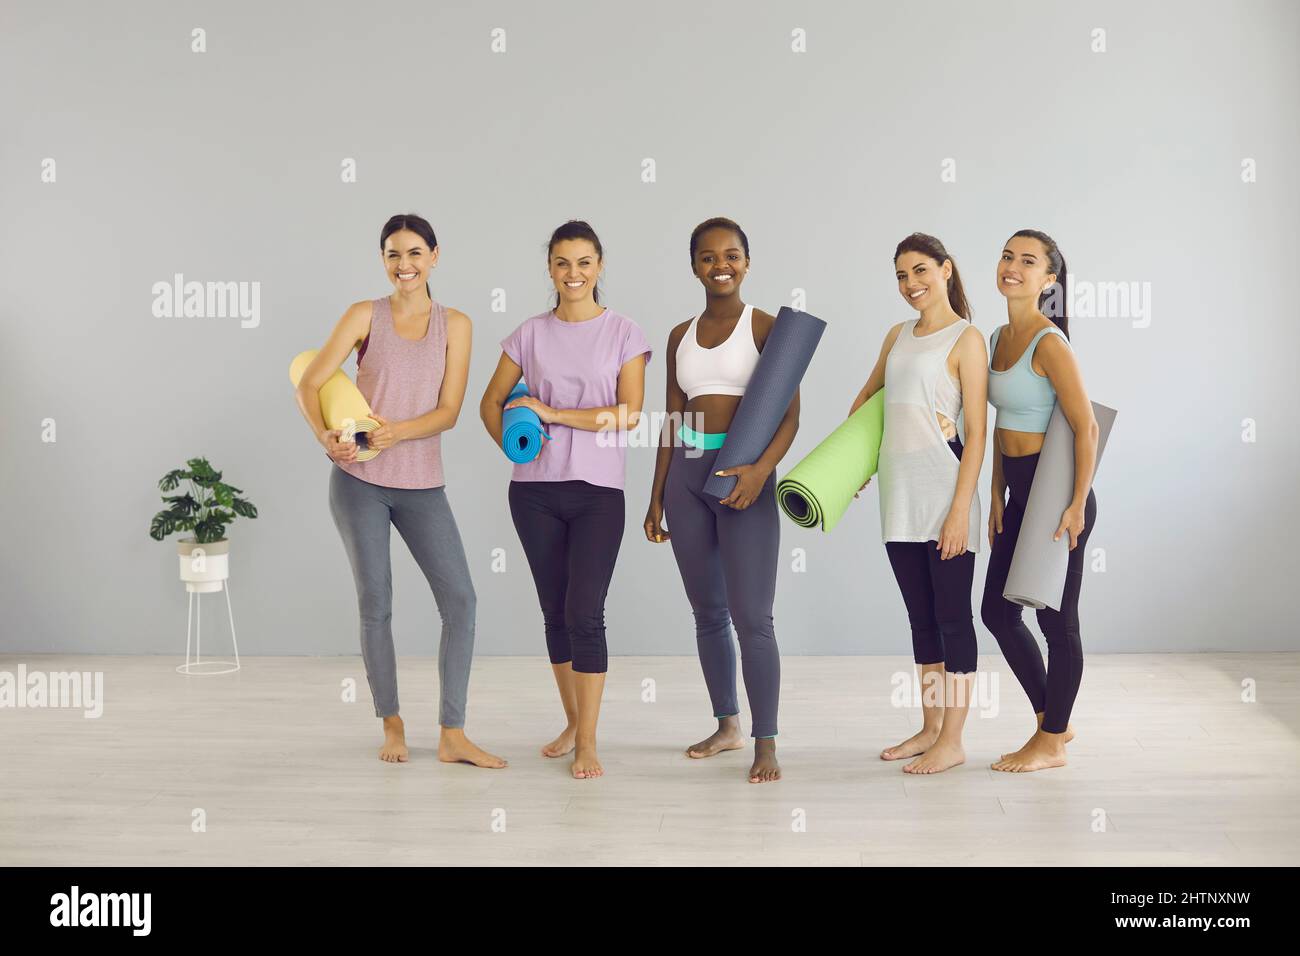 Ritratto di sorridente gruppo di ragazze multietniche nel fitness club Foto Stock